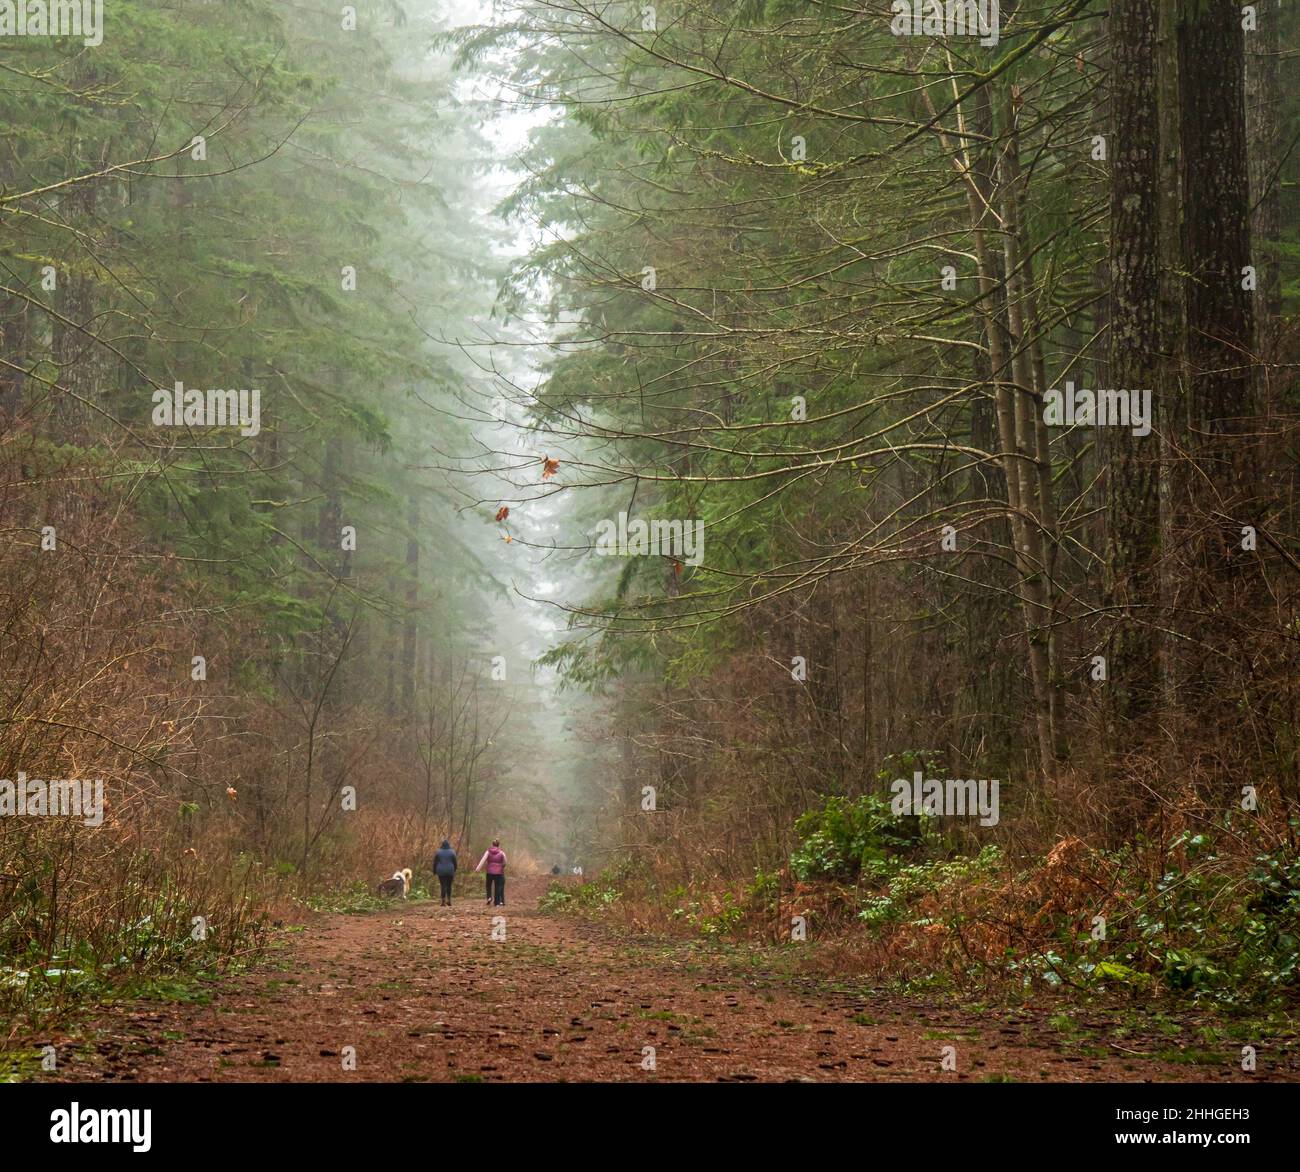 Marche sur un sentier forestier, ambiance brumeuse, mystérieuse et rêveuse avec brume qui monte à travers les arbres.Forêt typique de la Colombie-Britannique. Banque D'Images